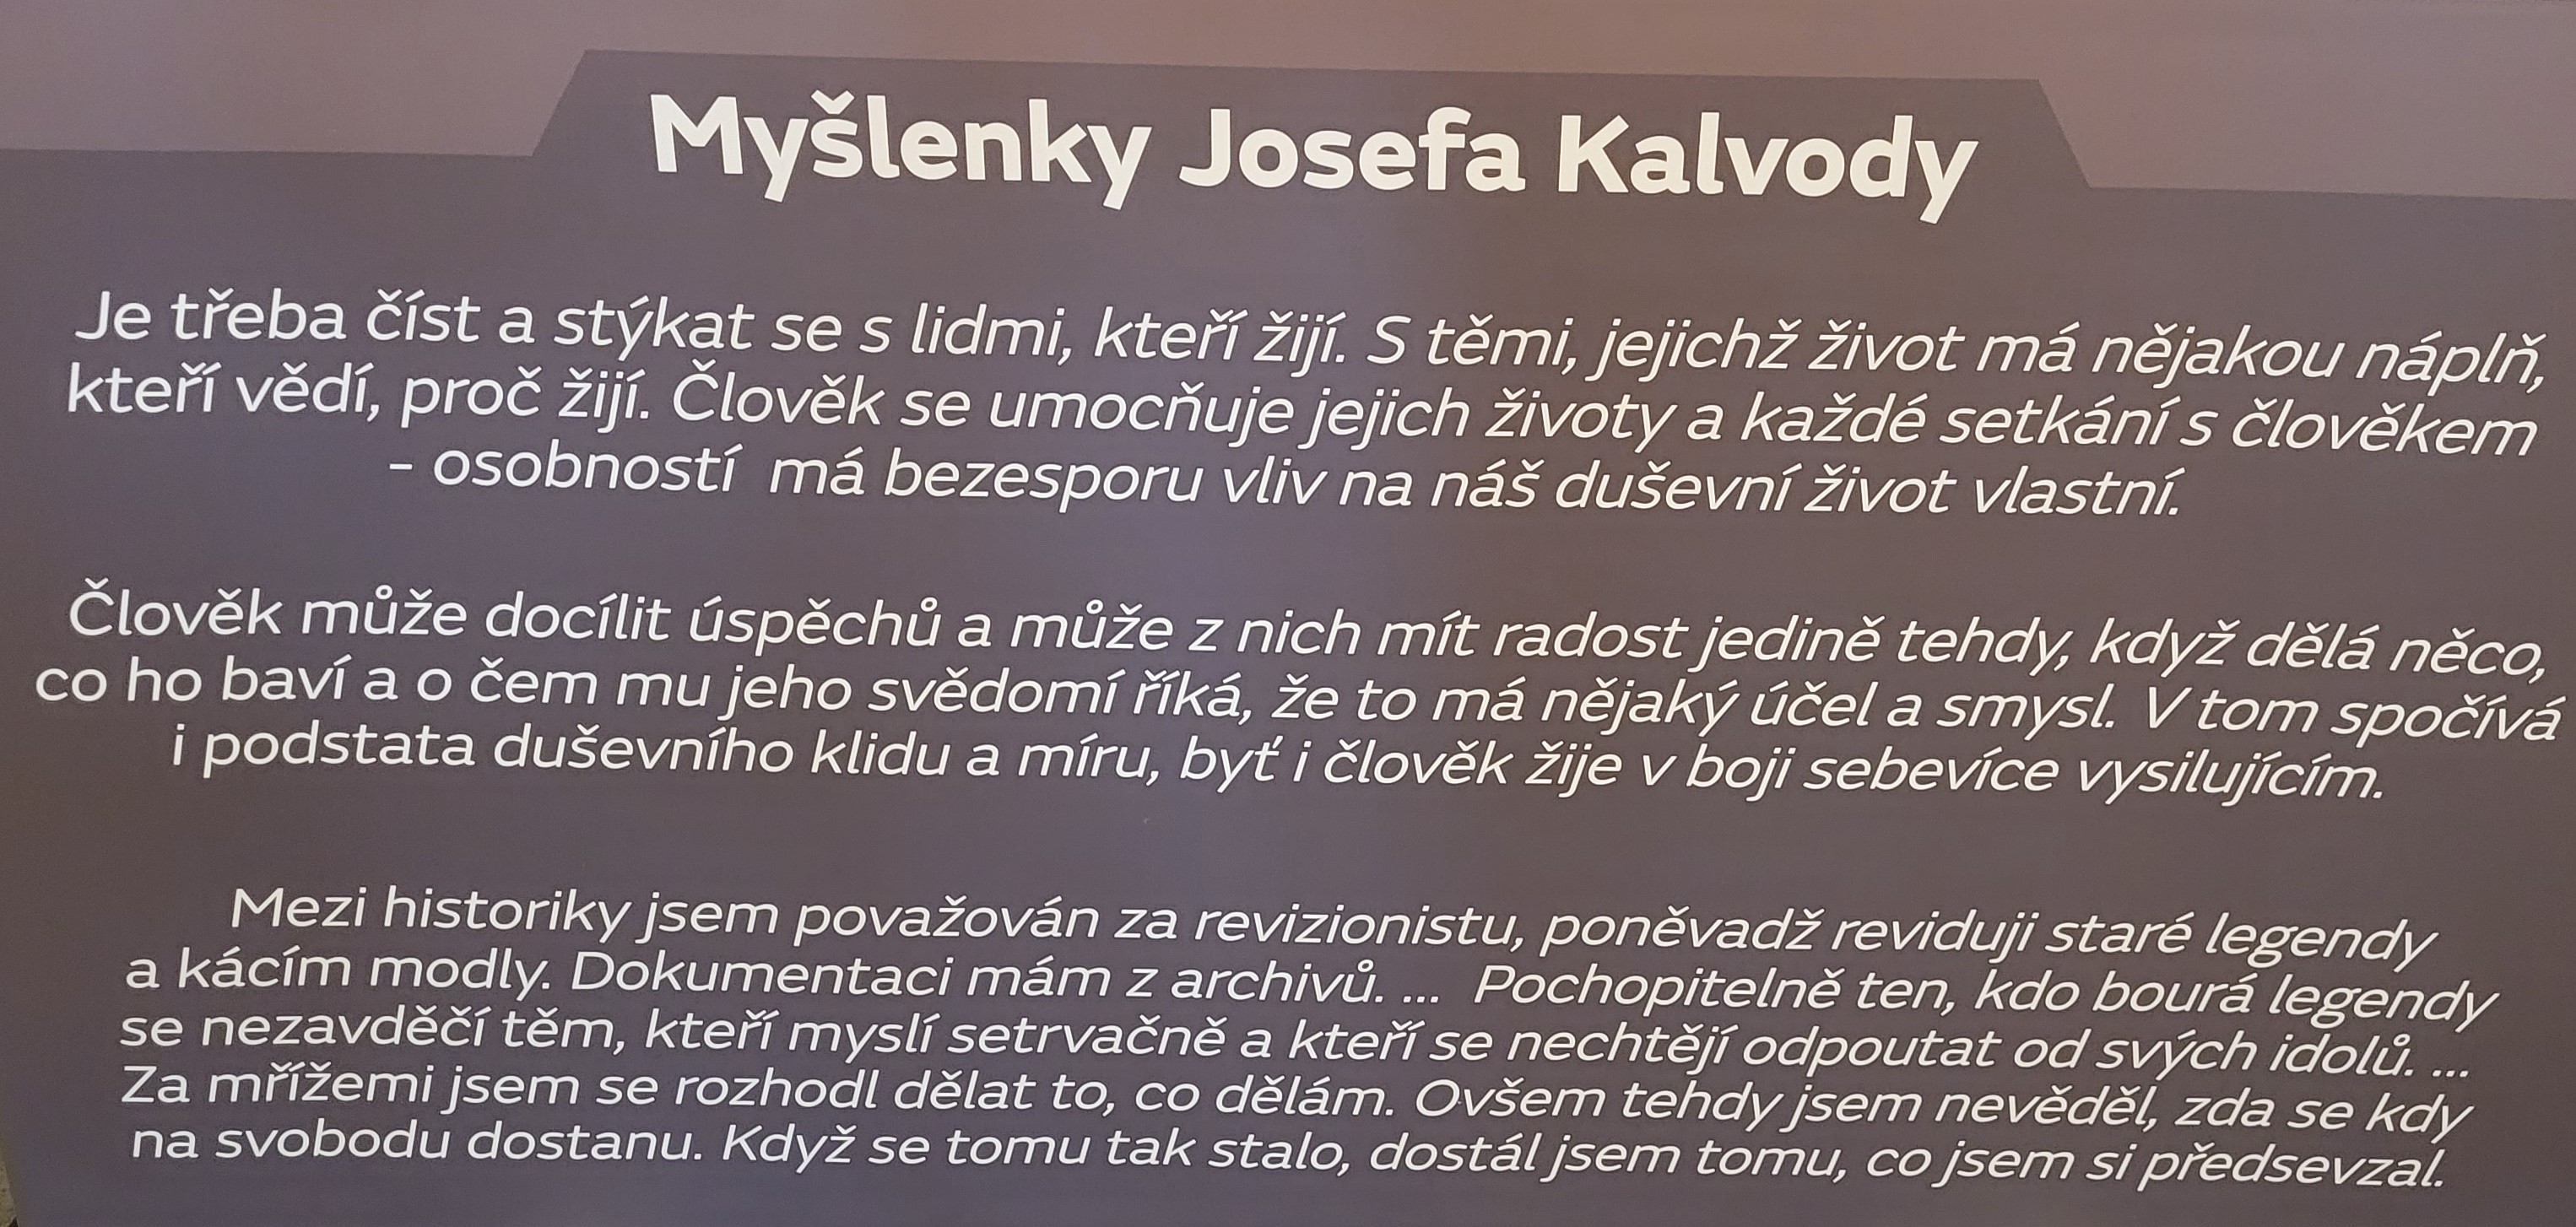 Myslenky Josefa Kalvody